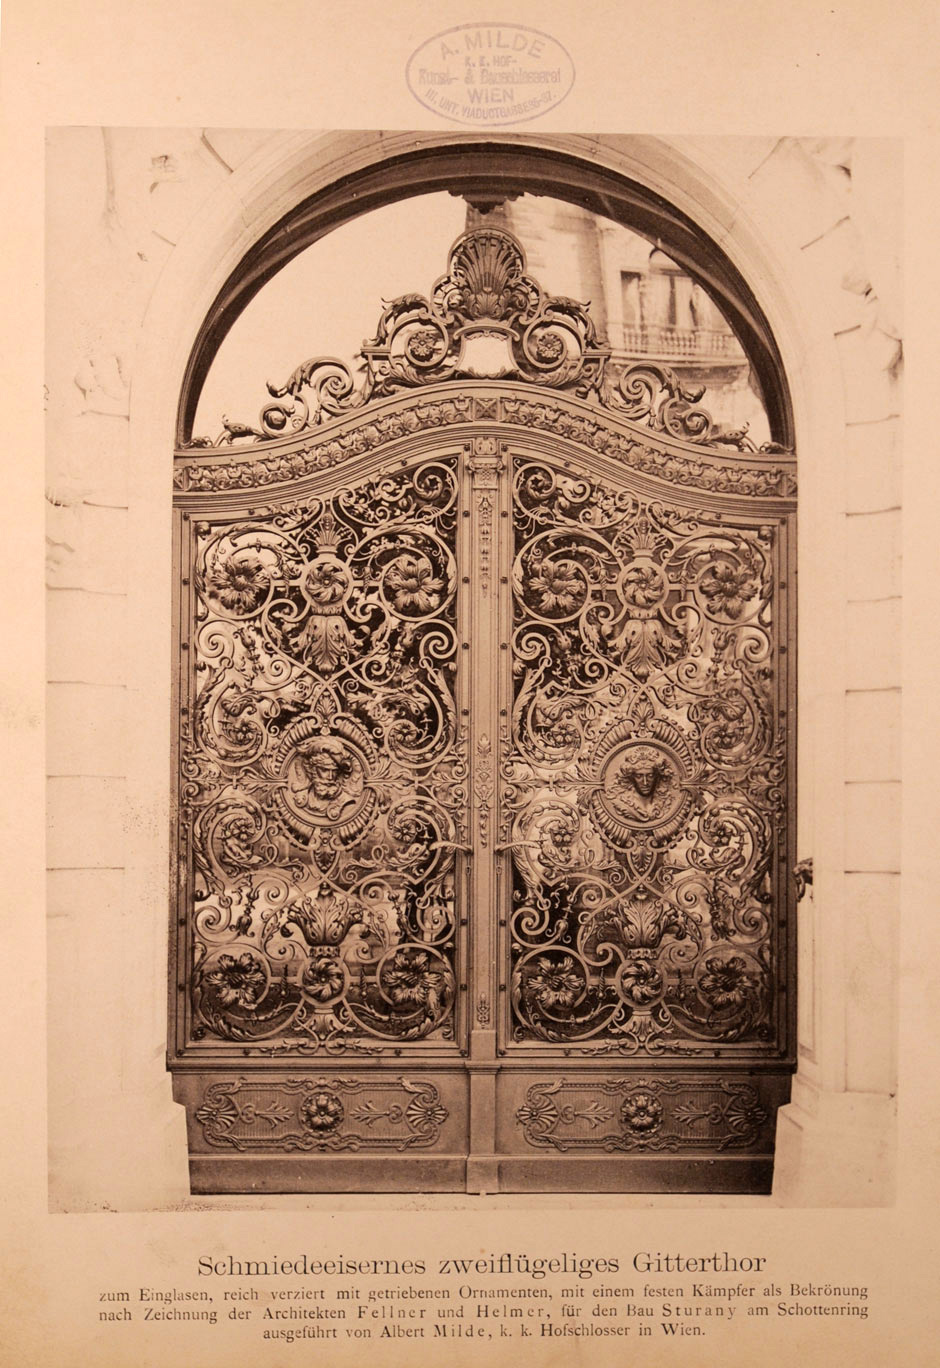 Schmiedeeisernes reichverziertes zweiflügeliges Gittertor zum Einglasen mit getriebenen Ornamenten und einem festen Kämpfer als Bekrönung